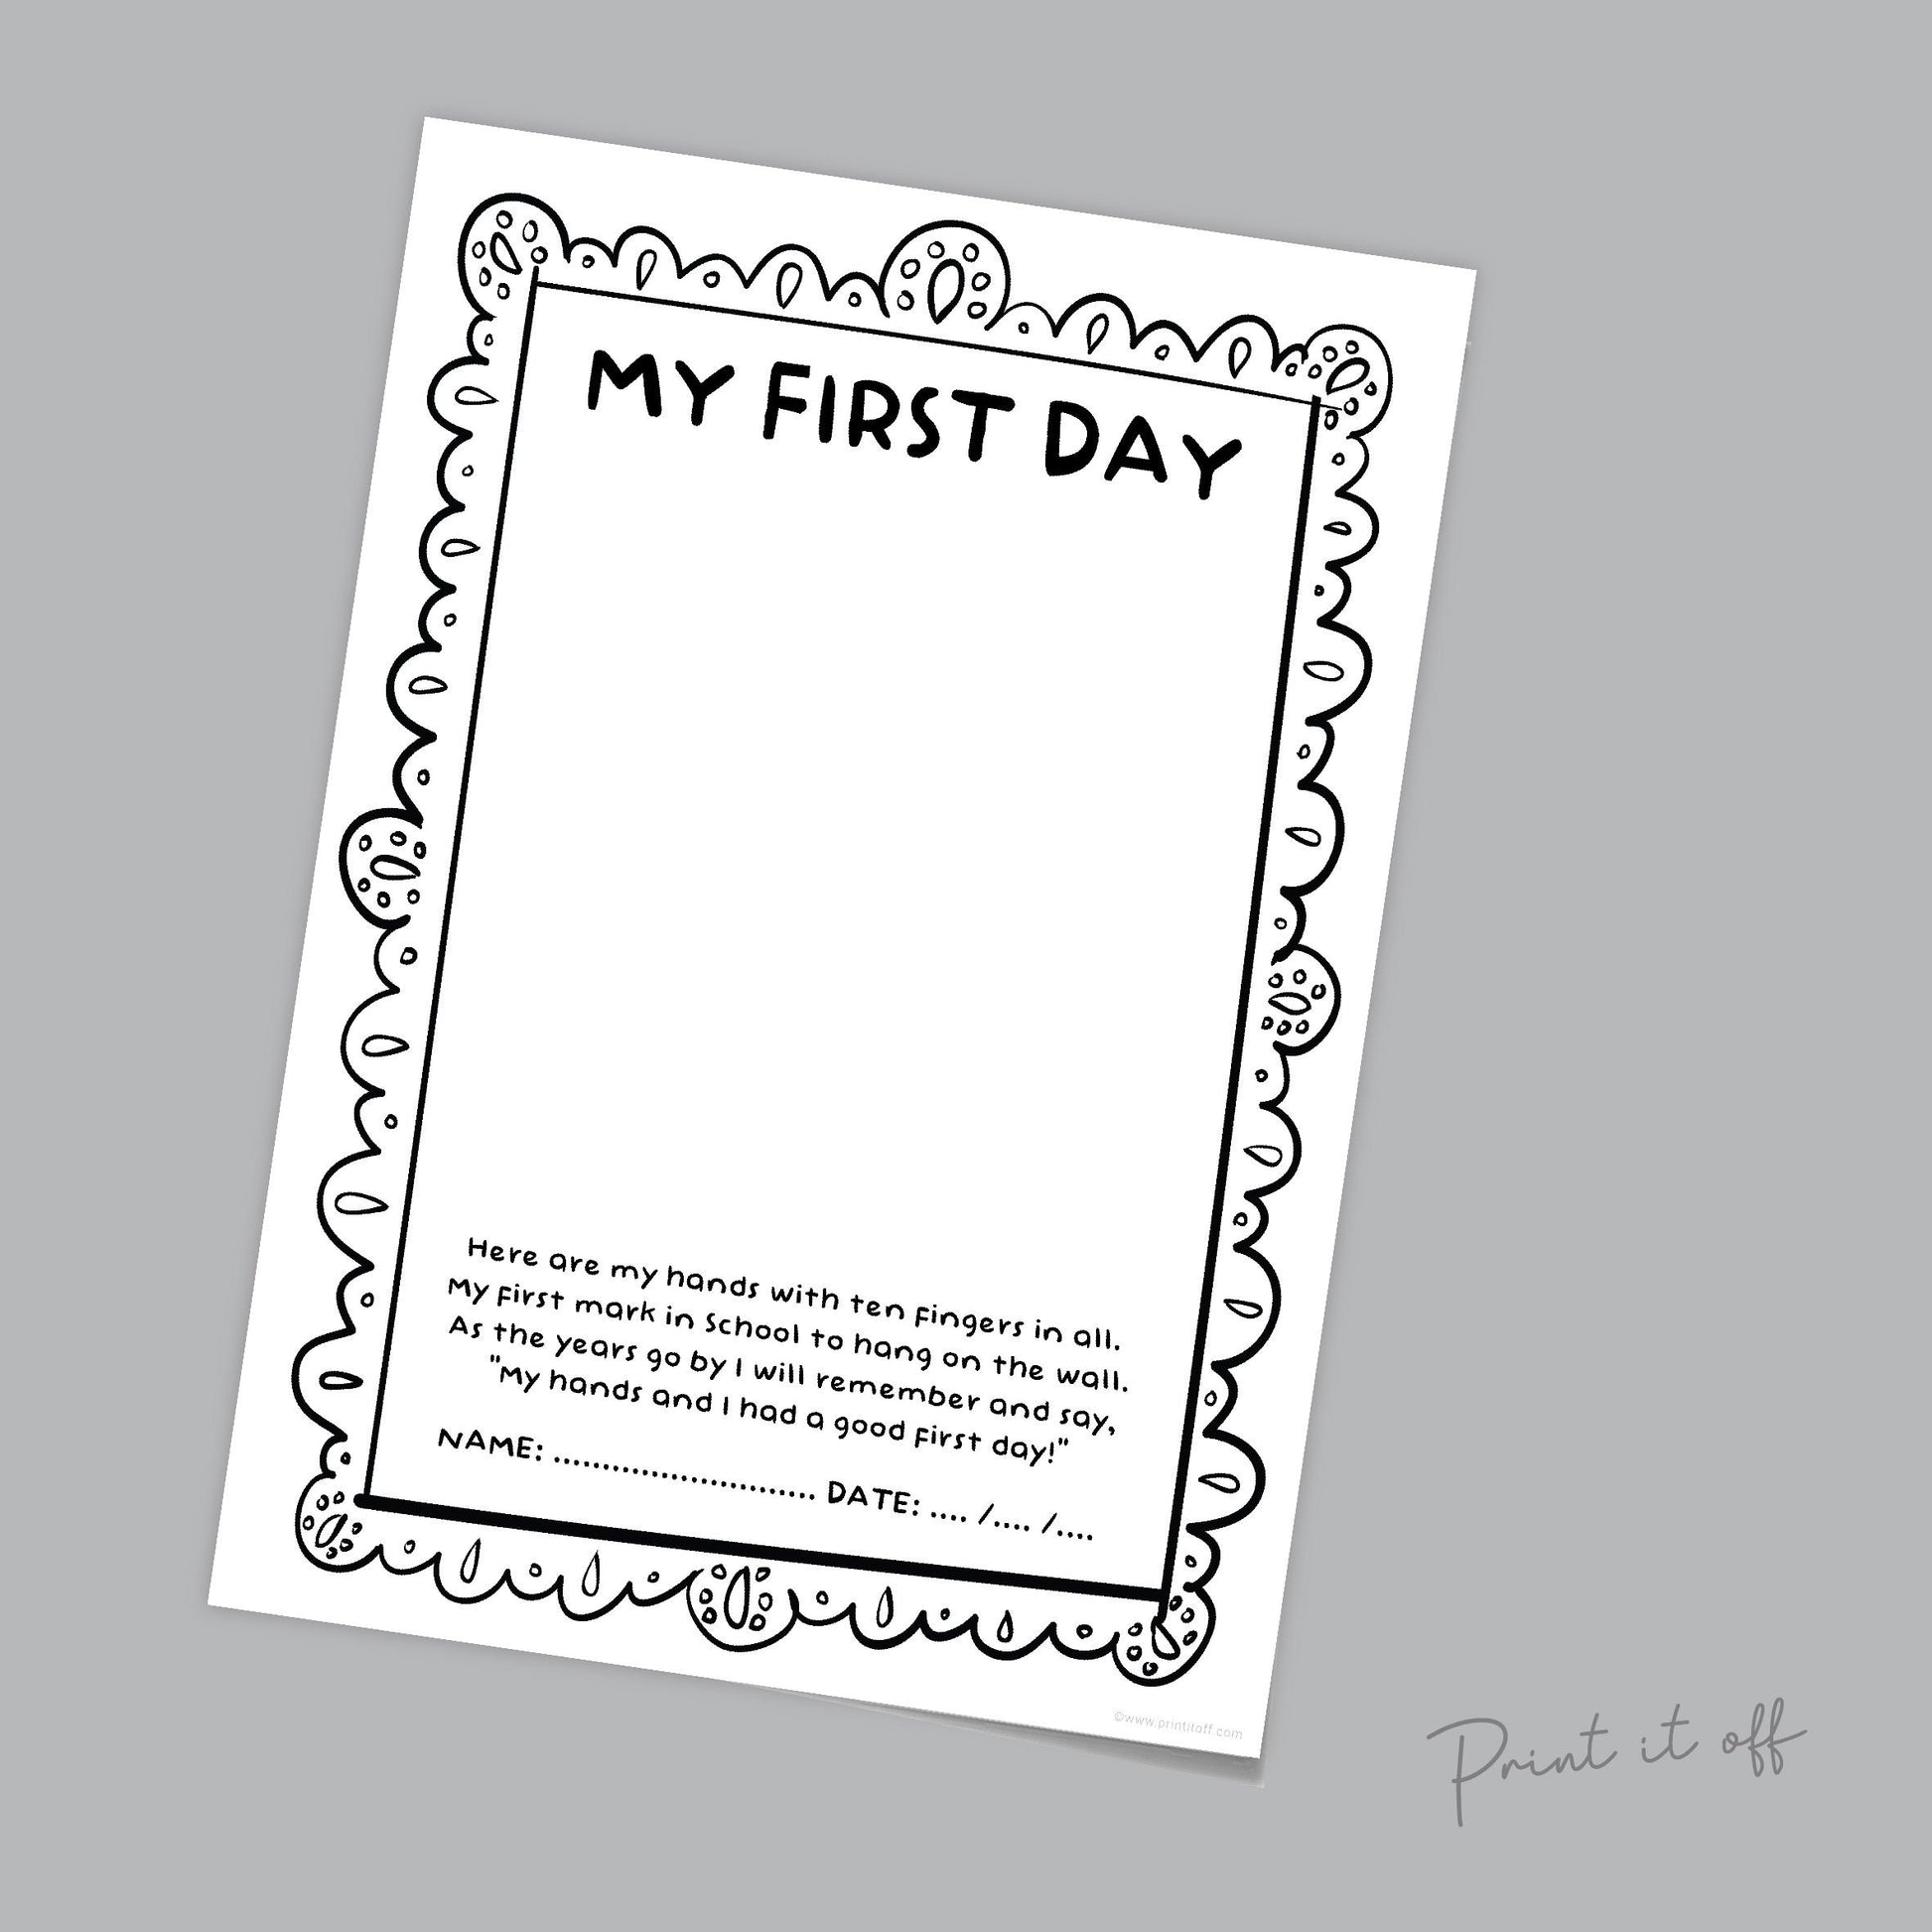 My First Day School / Handprint Hand Craft Art Poem / Starting Kindergarten PreK Preschool / Child Kids Teacher Resource / PRINT IT OFF 0560